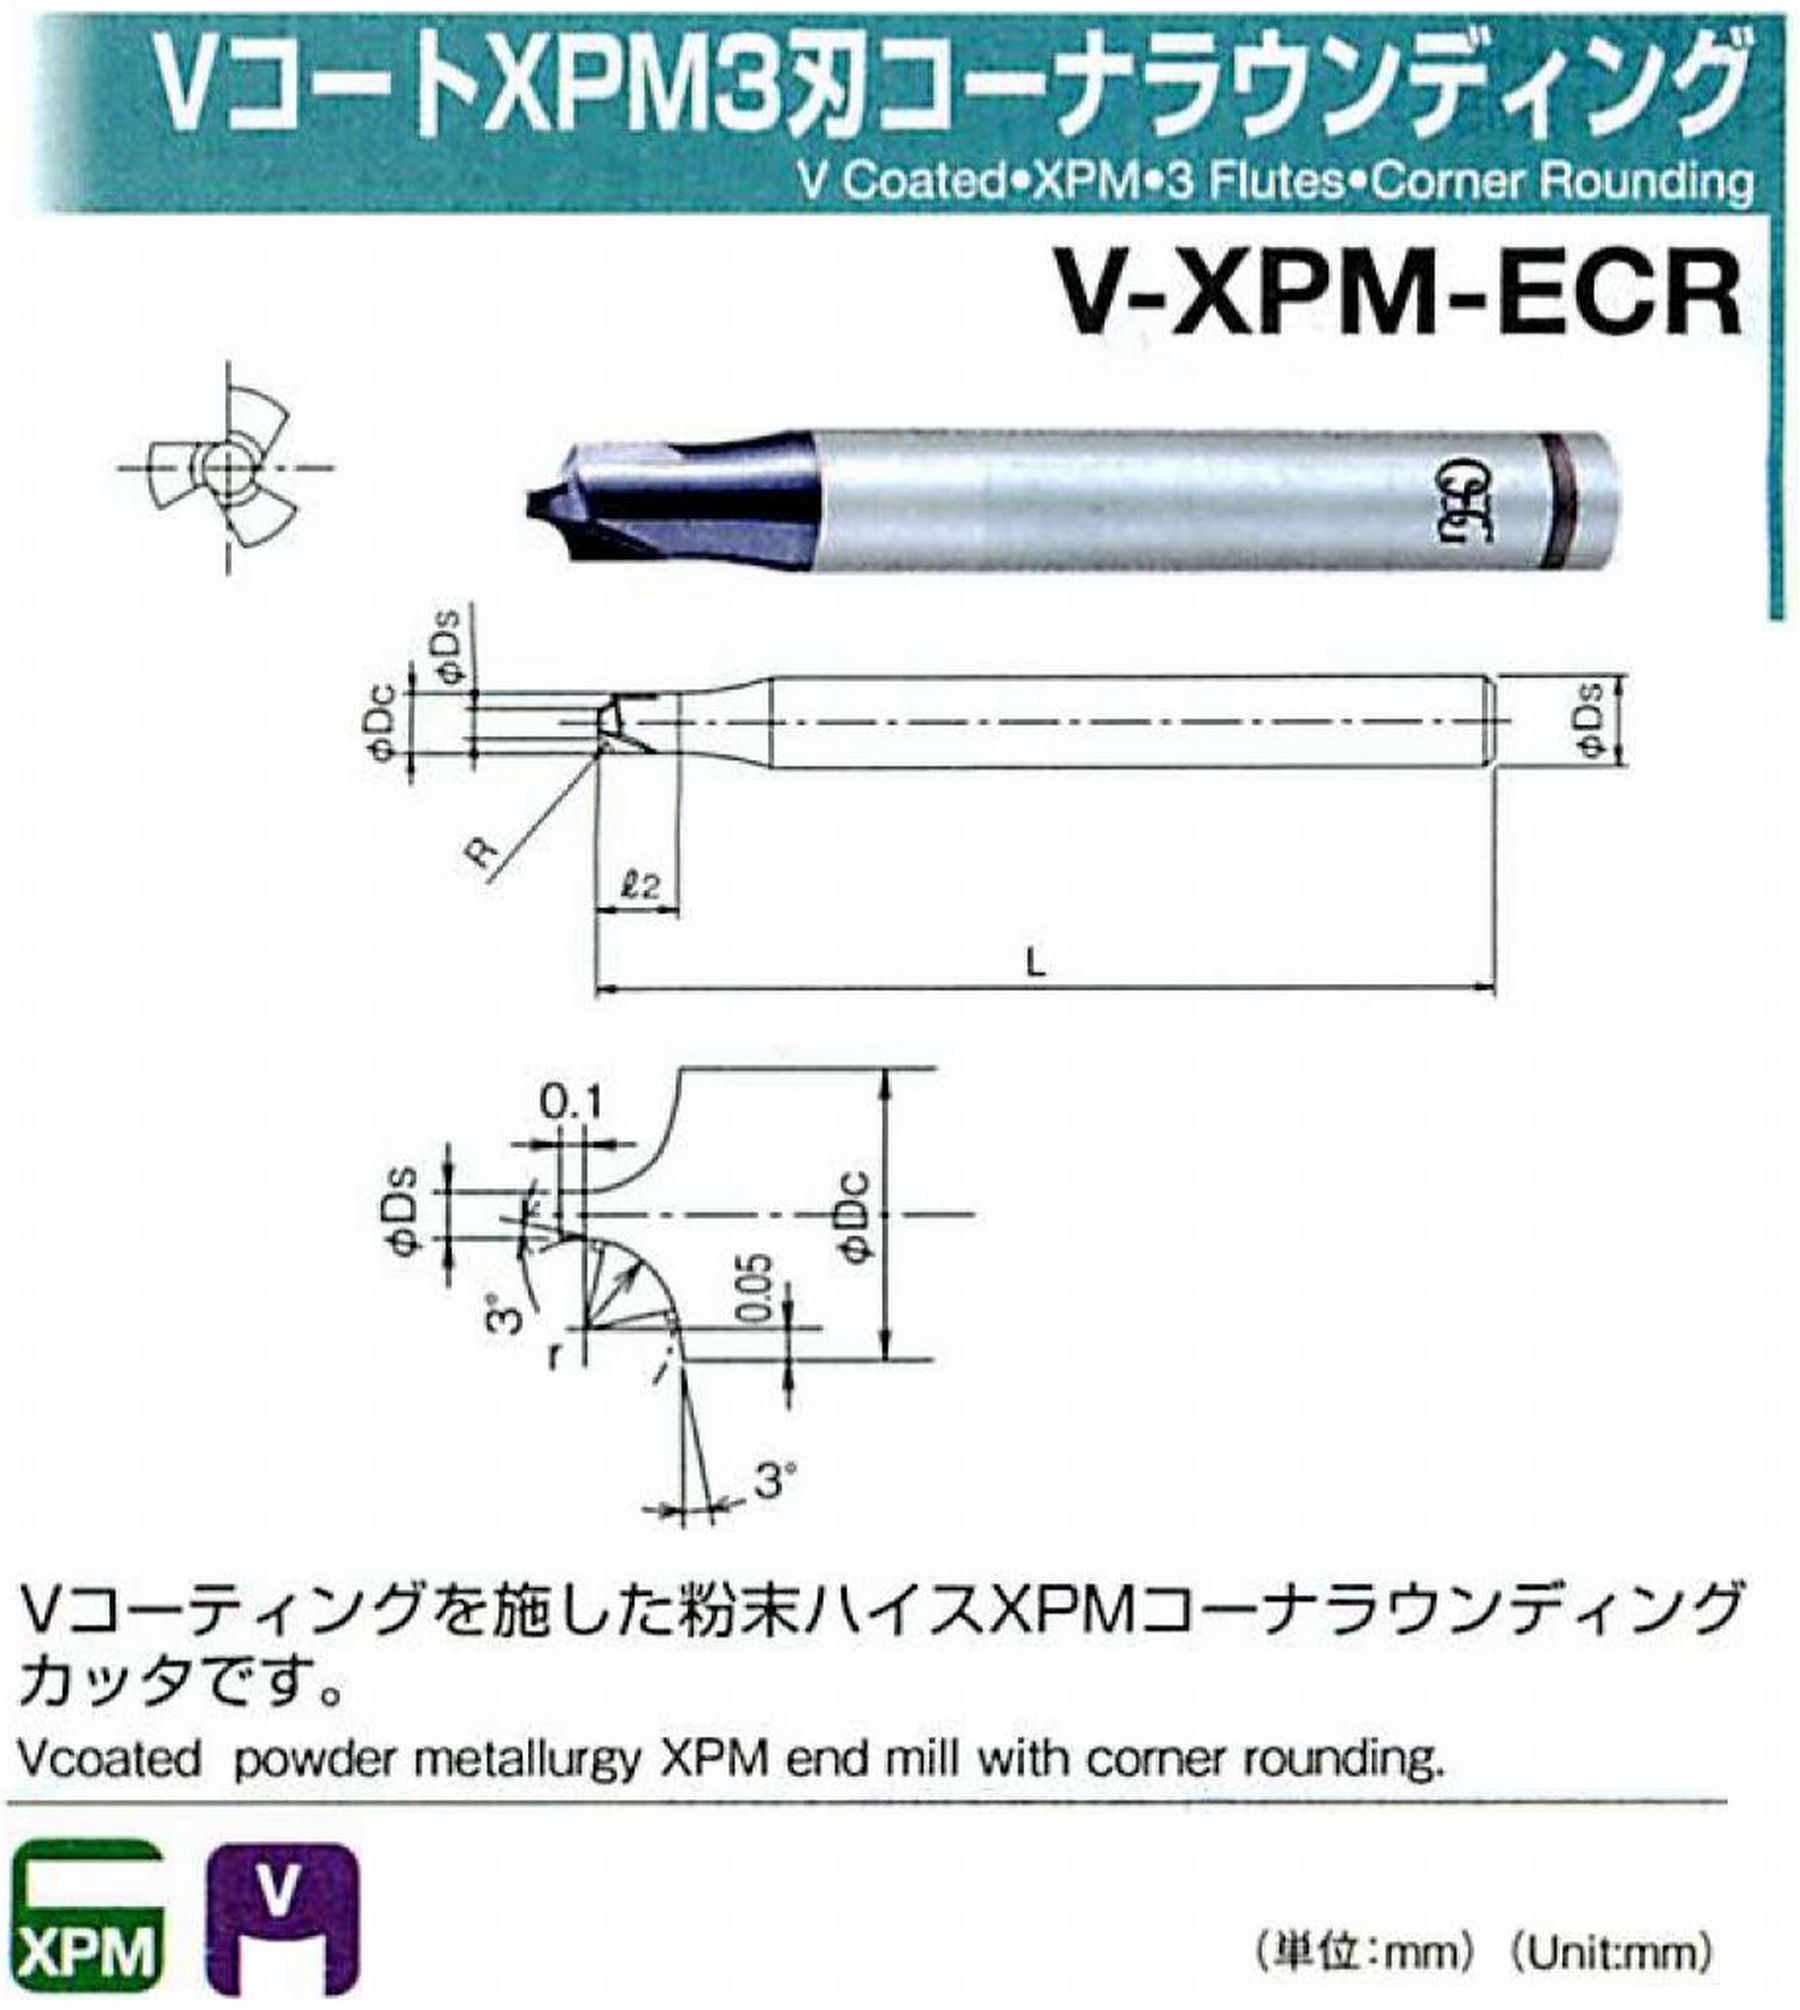 オーエスジー/OSG VコートXPM3刃 コーナラウンディング V-XPM-ECR 先端角×コーナ半径2×R3.5 外径9 全長60 シャンク径10mm 首下長12